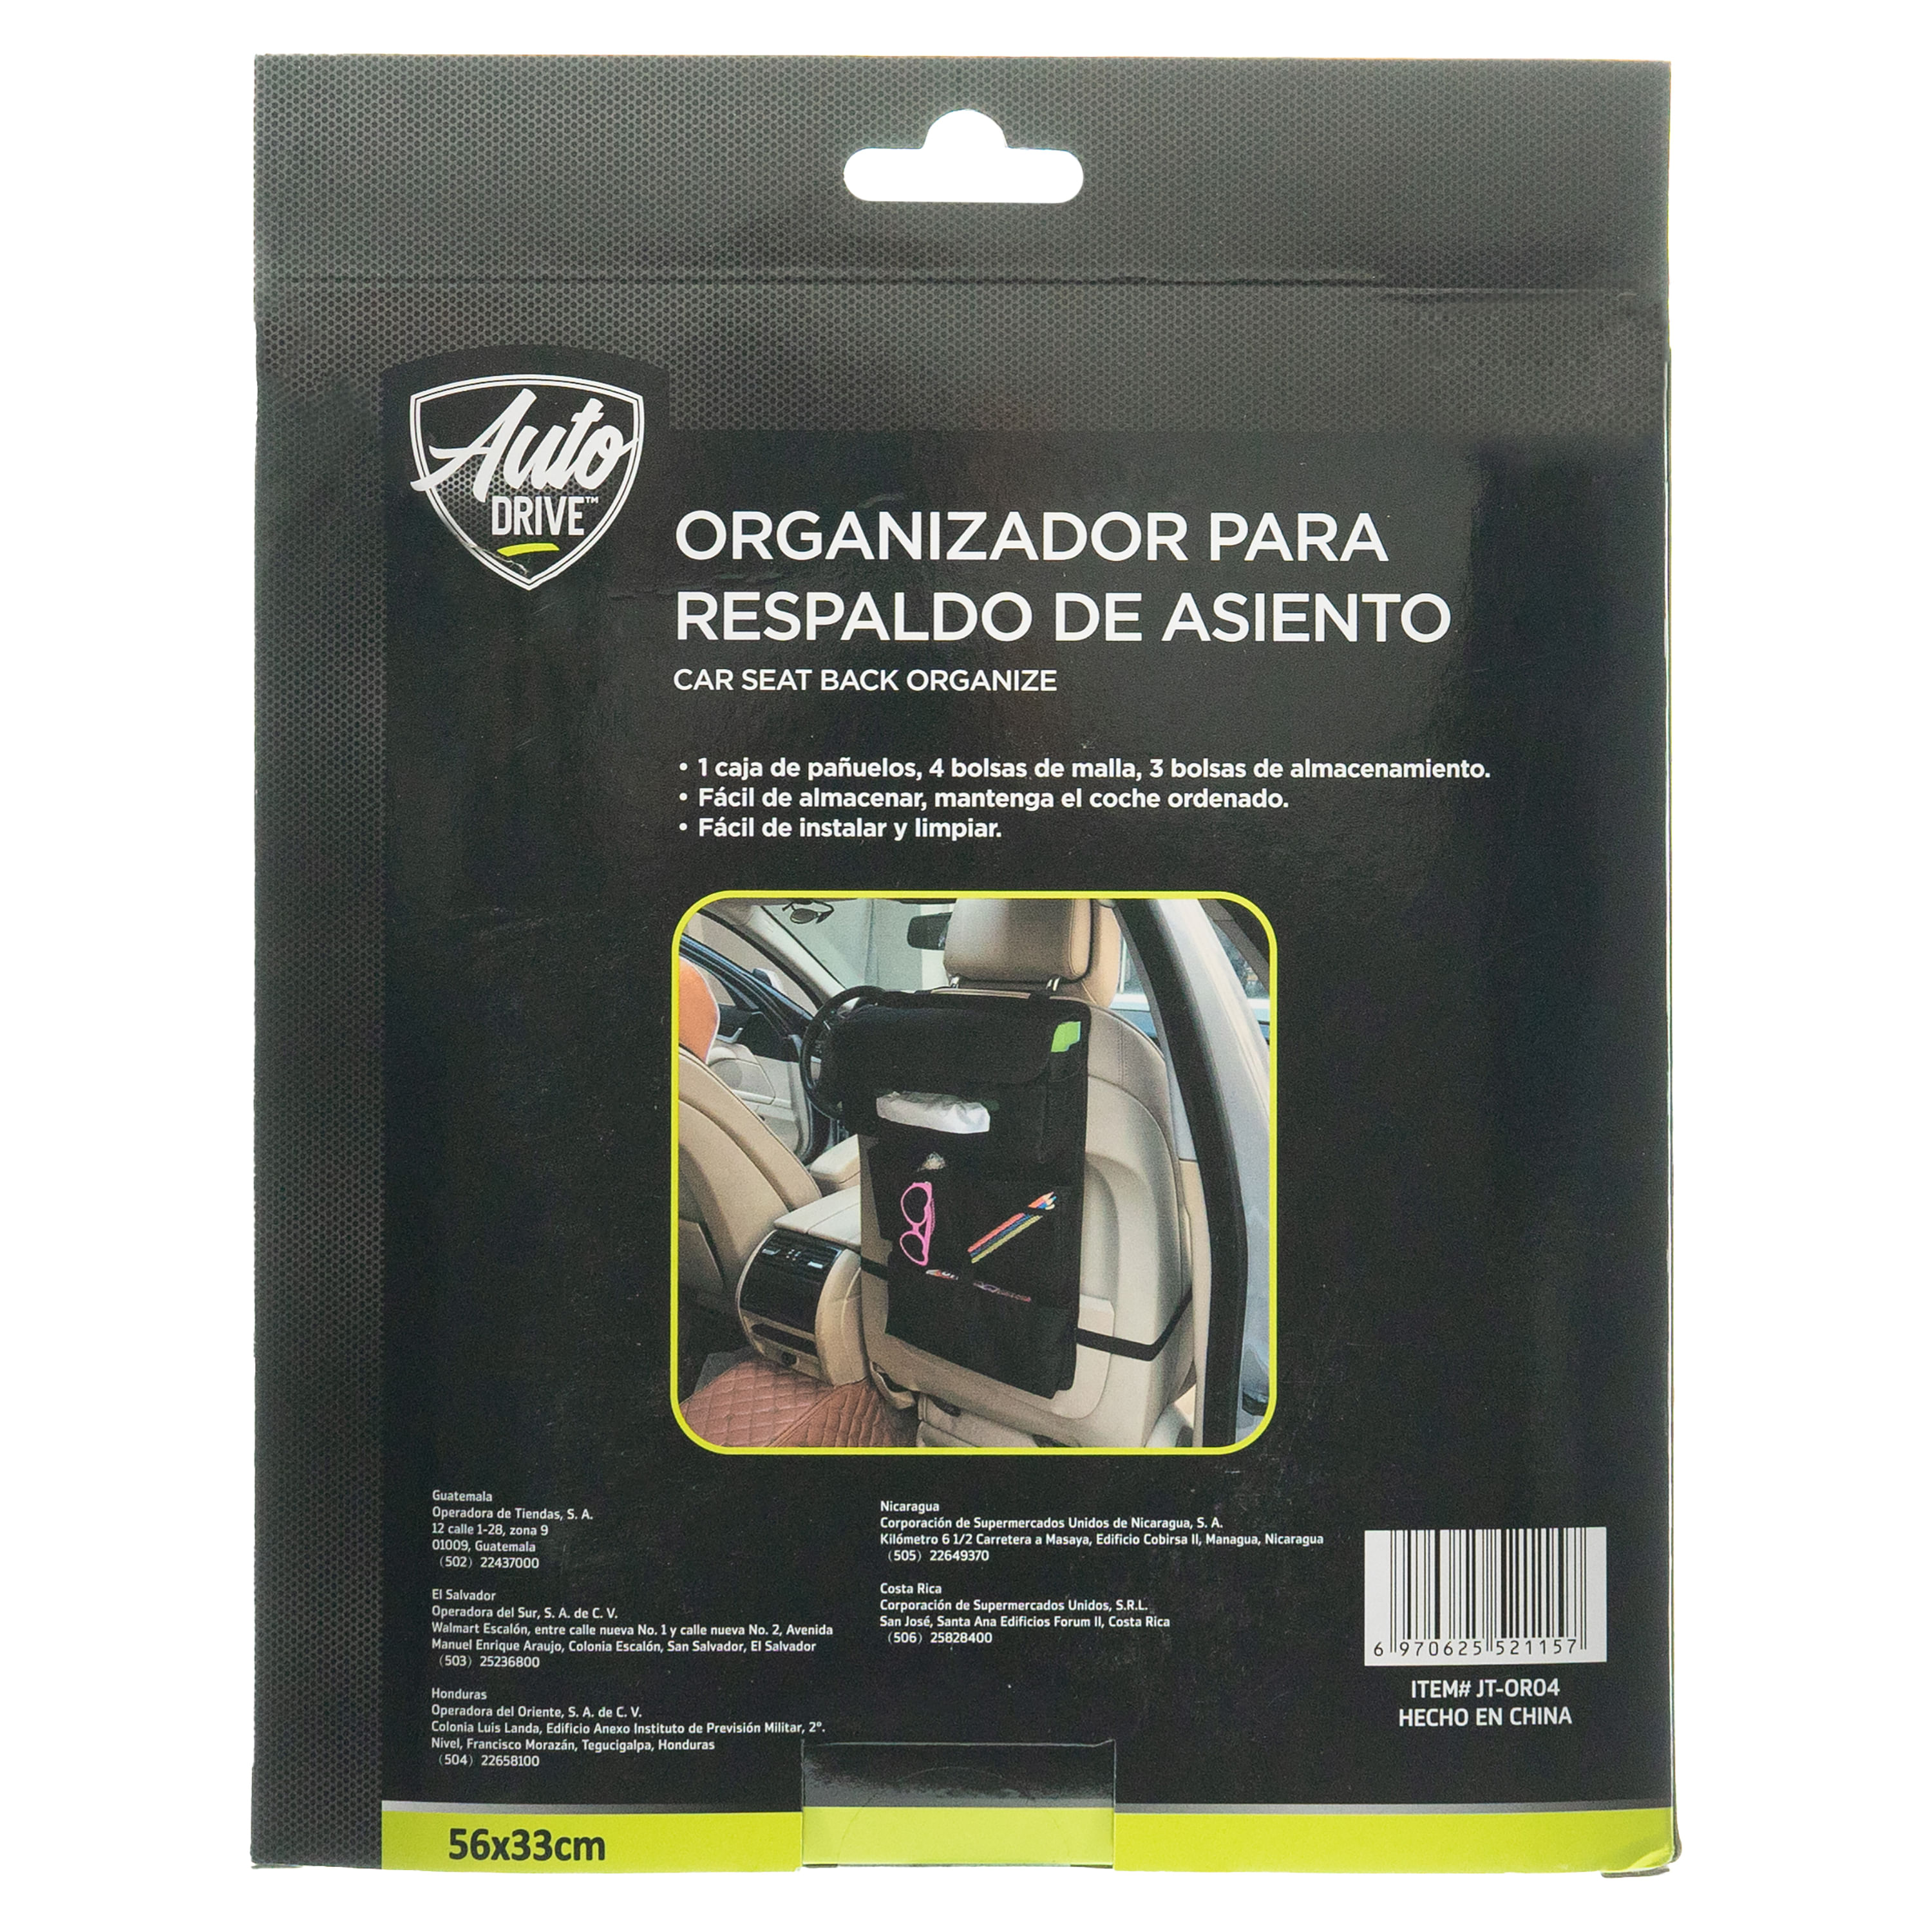 Comprar Organizador Auto Drive Para Respaldo Modelo JT-OR04, Walmart  Guatemala - Maxi Despensa